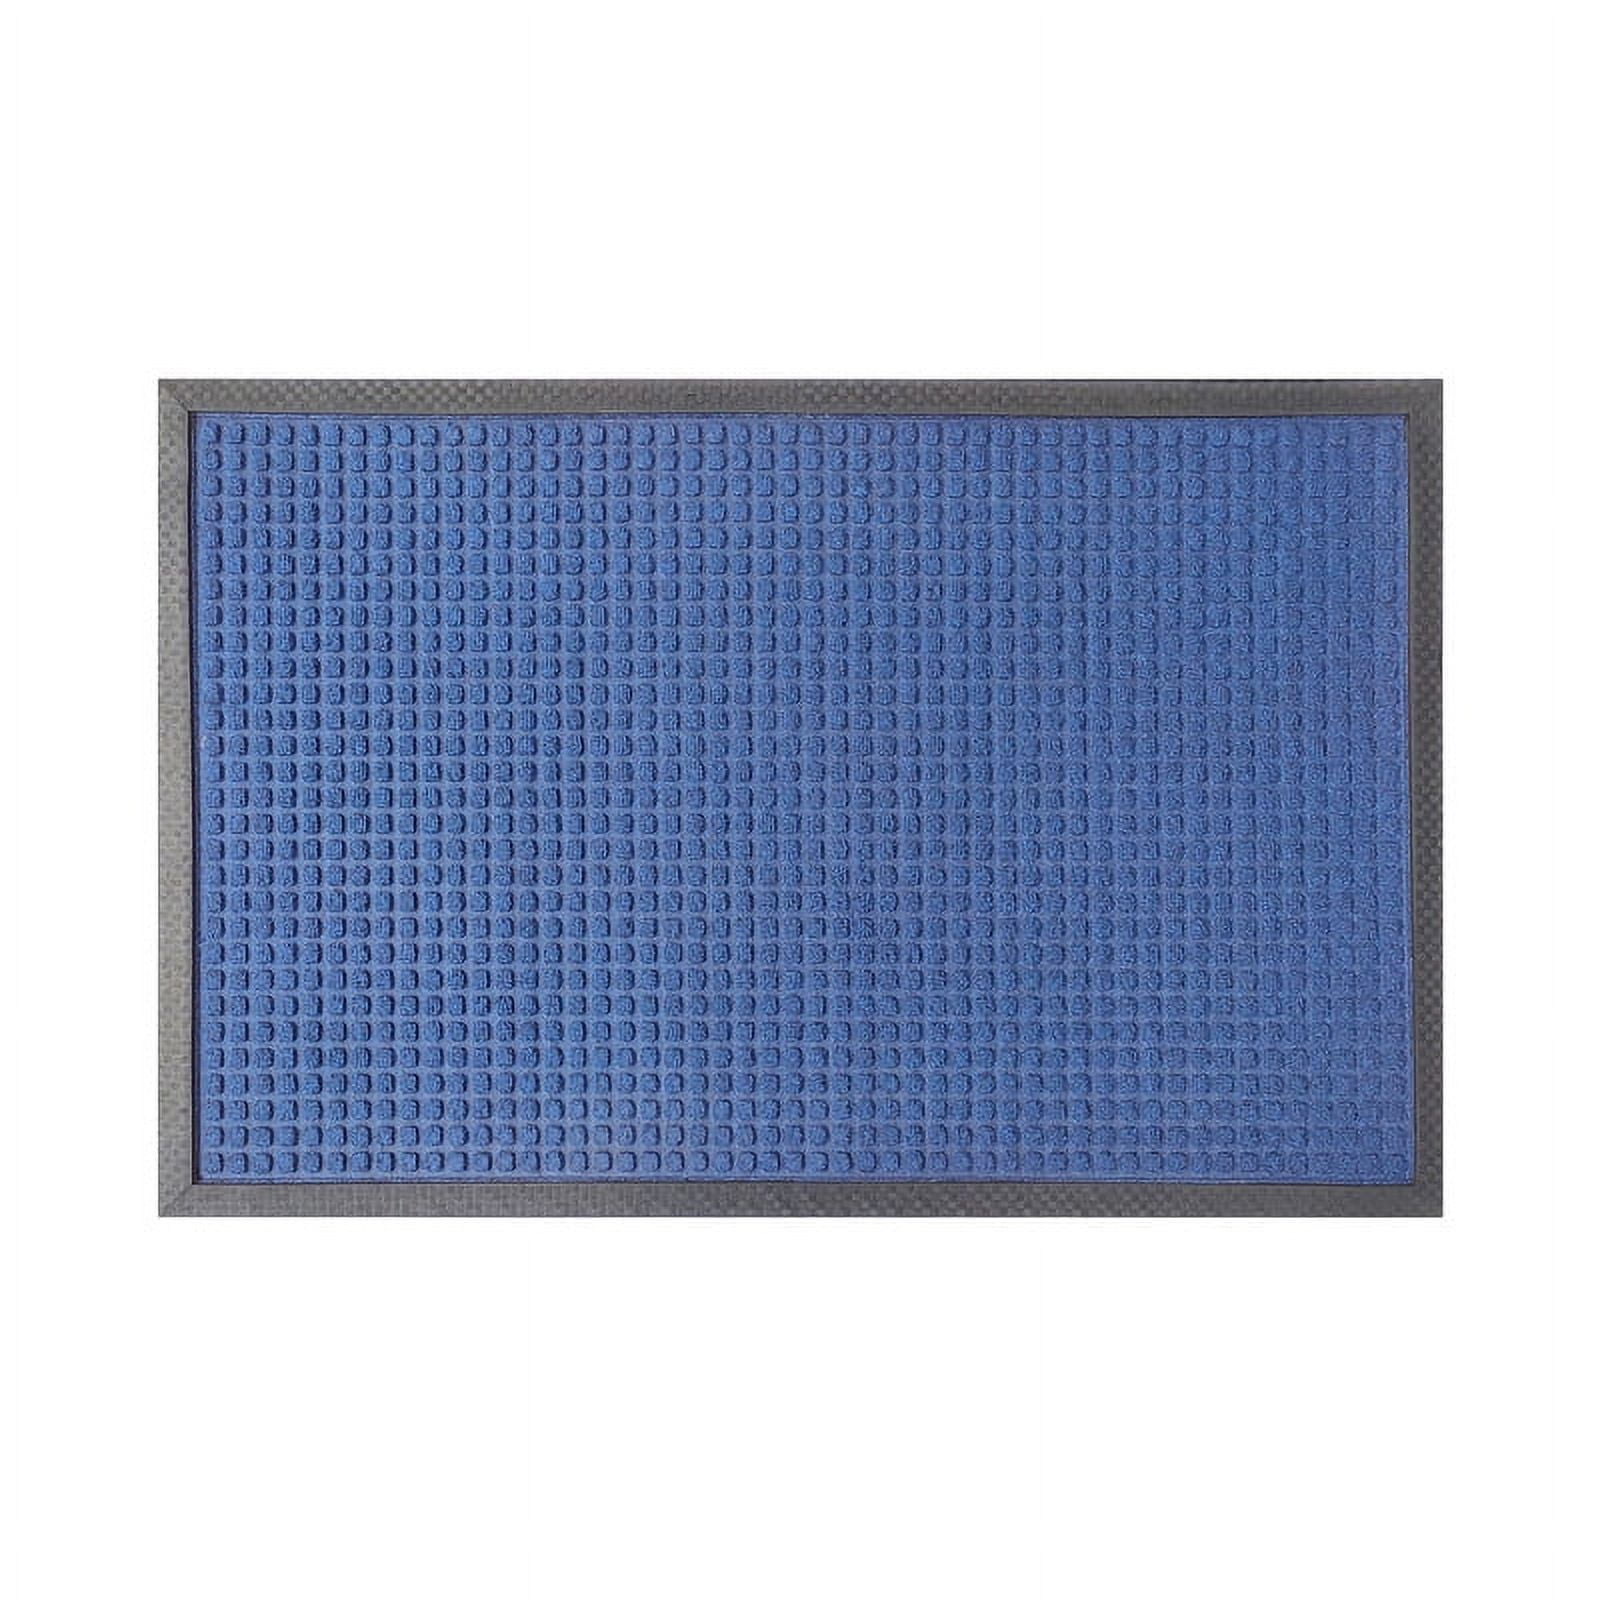 A1HC Durable and Versatile Polypropylene Rubber Door Mat All